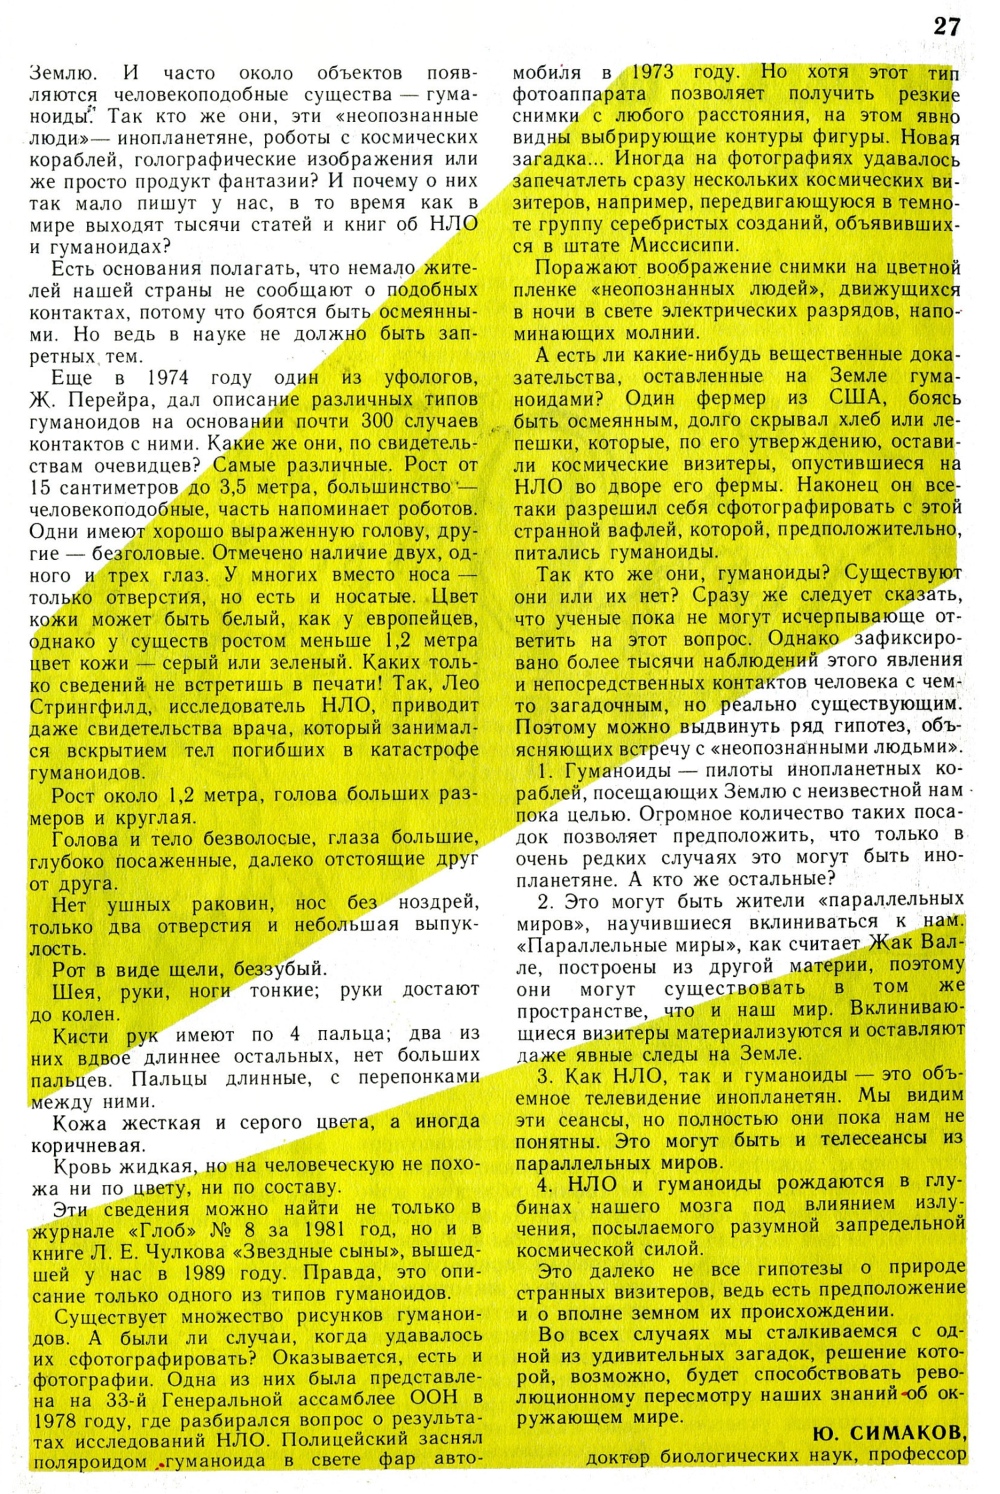 Пришельцы? Ю. Симаков. Юный натуралист, 1991, №1, с.25-27. Фотокопия №3